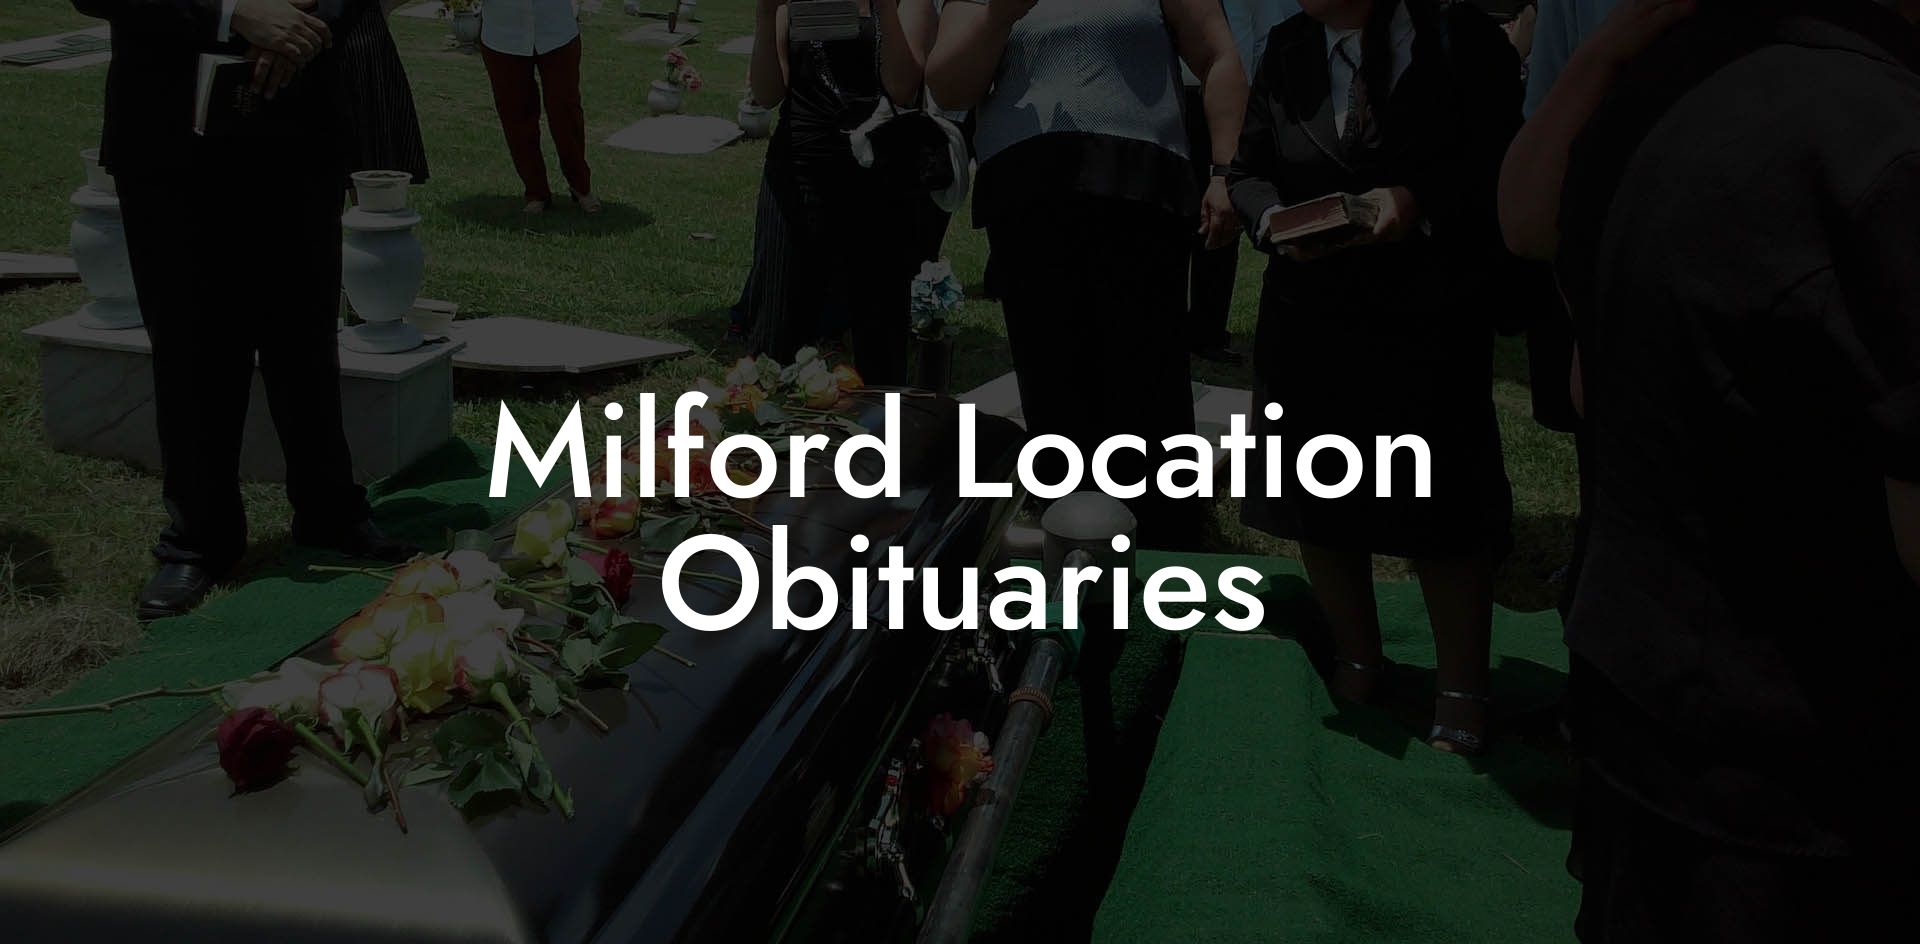 Milford Location Obituaries